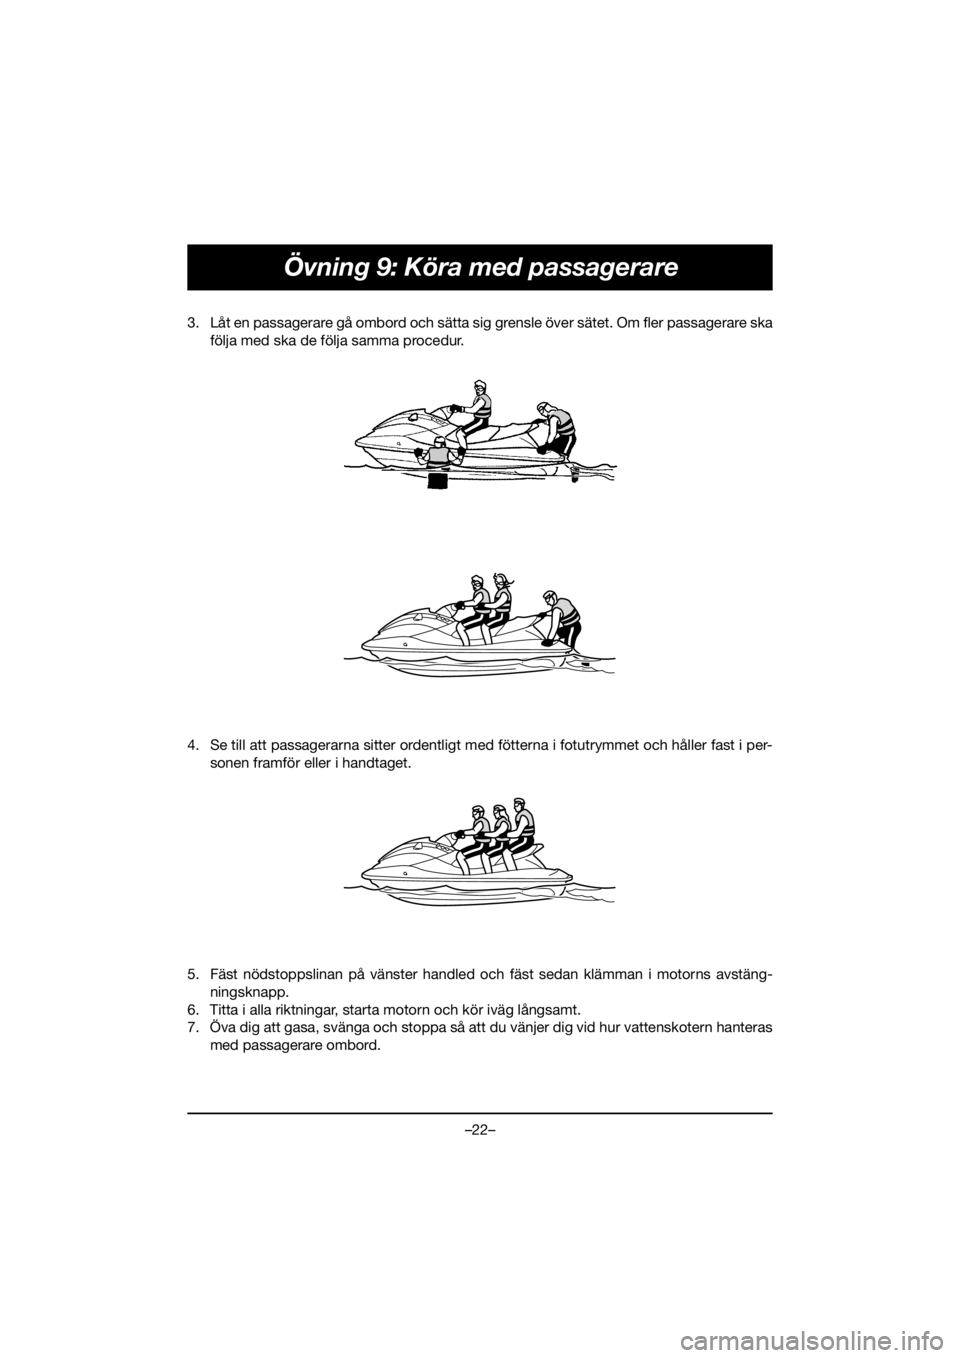 YAMAHA GP1800R SVHO 2020  Bruksanvisningar (in Swedish) –22–
Övning 9: Köra med passagerare
3. Låt en passagerare gå ombord och sätta sig grensle över sätet. Om fler passagerare ska
följa med ska de följa samma procedur. 
4. Se till att passag